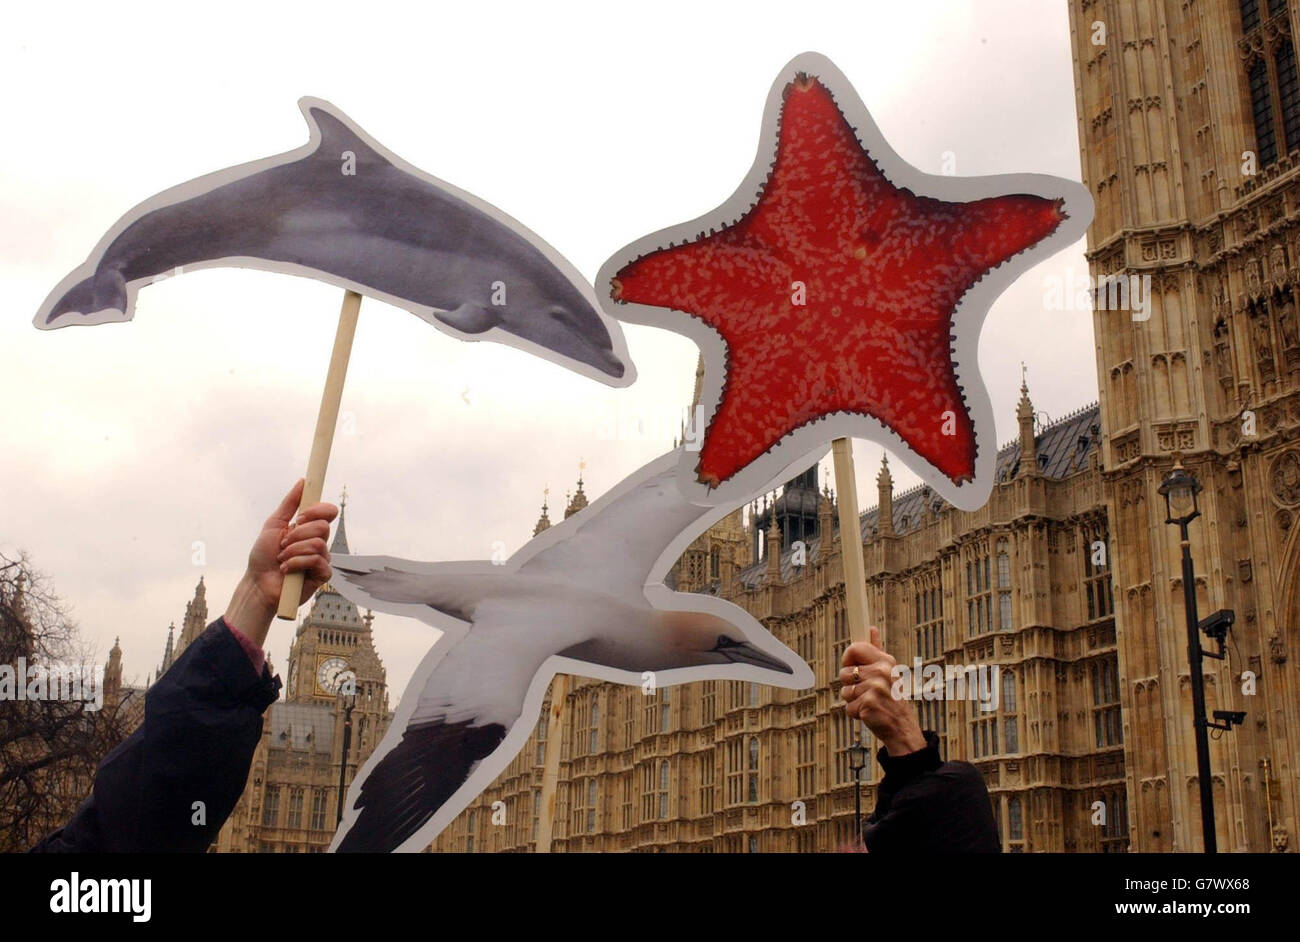 Tierschützer halten Bilder von marinen Wildtieren hoch. Aktivisten reisten nach London, um die Regierung zu drängen, mehr Dringlichkeit für die Einführung des vorgeschlagenen Meeresgesetzes einzulegen, das darauf abzielt, die Meereswildtiere zu schützen, die von Verschmutzung bedroht sind und die Fischerei schädigen. Stockfoto